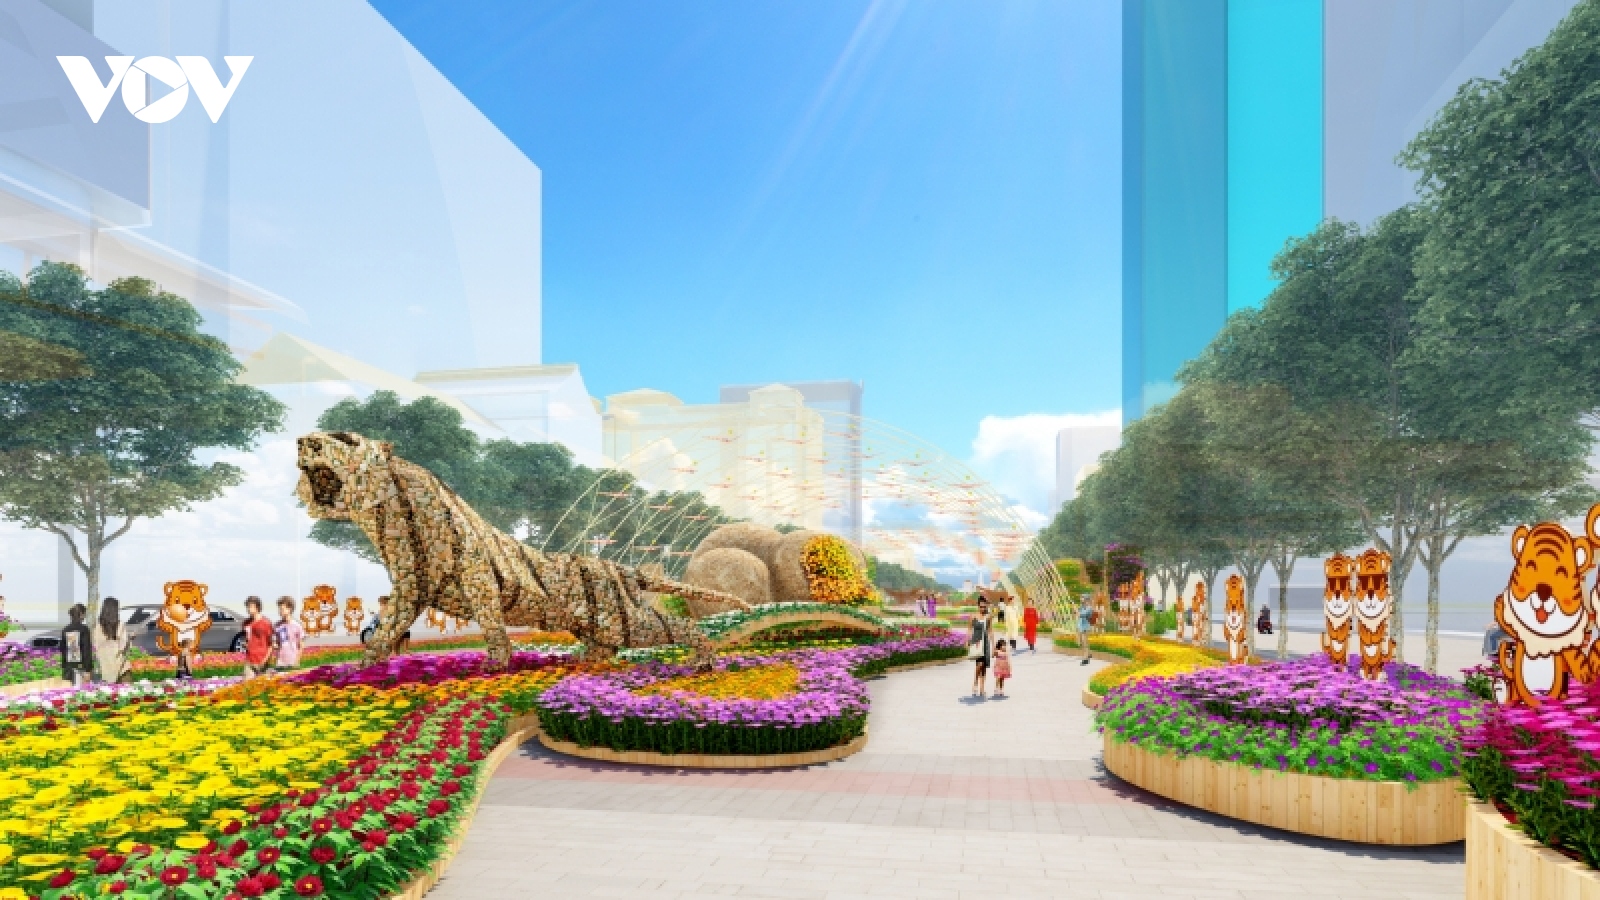 Biểu tượng của đường hoa Nguyễn Huệ 2022 là “chúa sơn lâm” bằng sỏi nặng gần 2 tấn